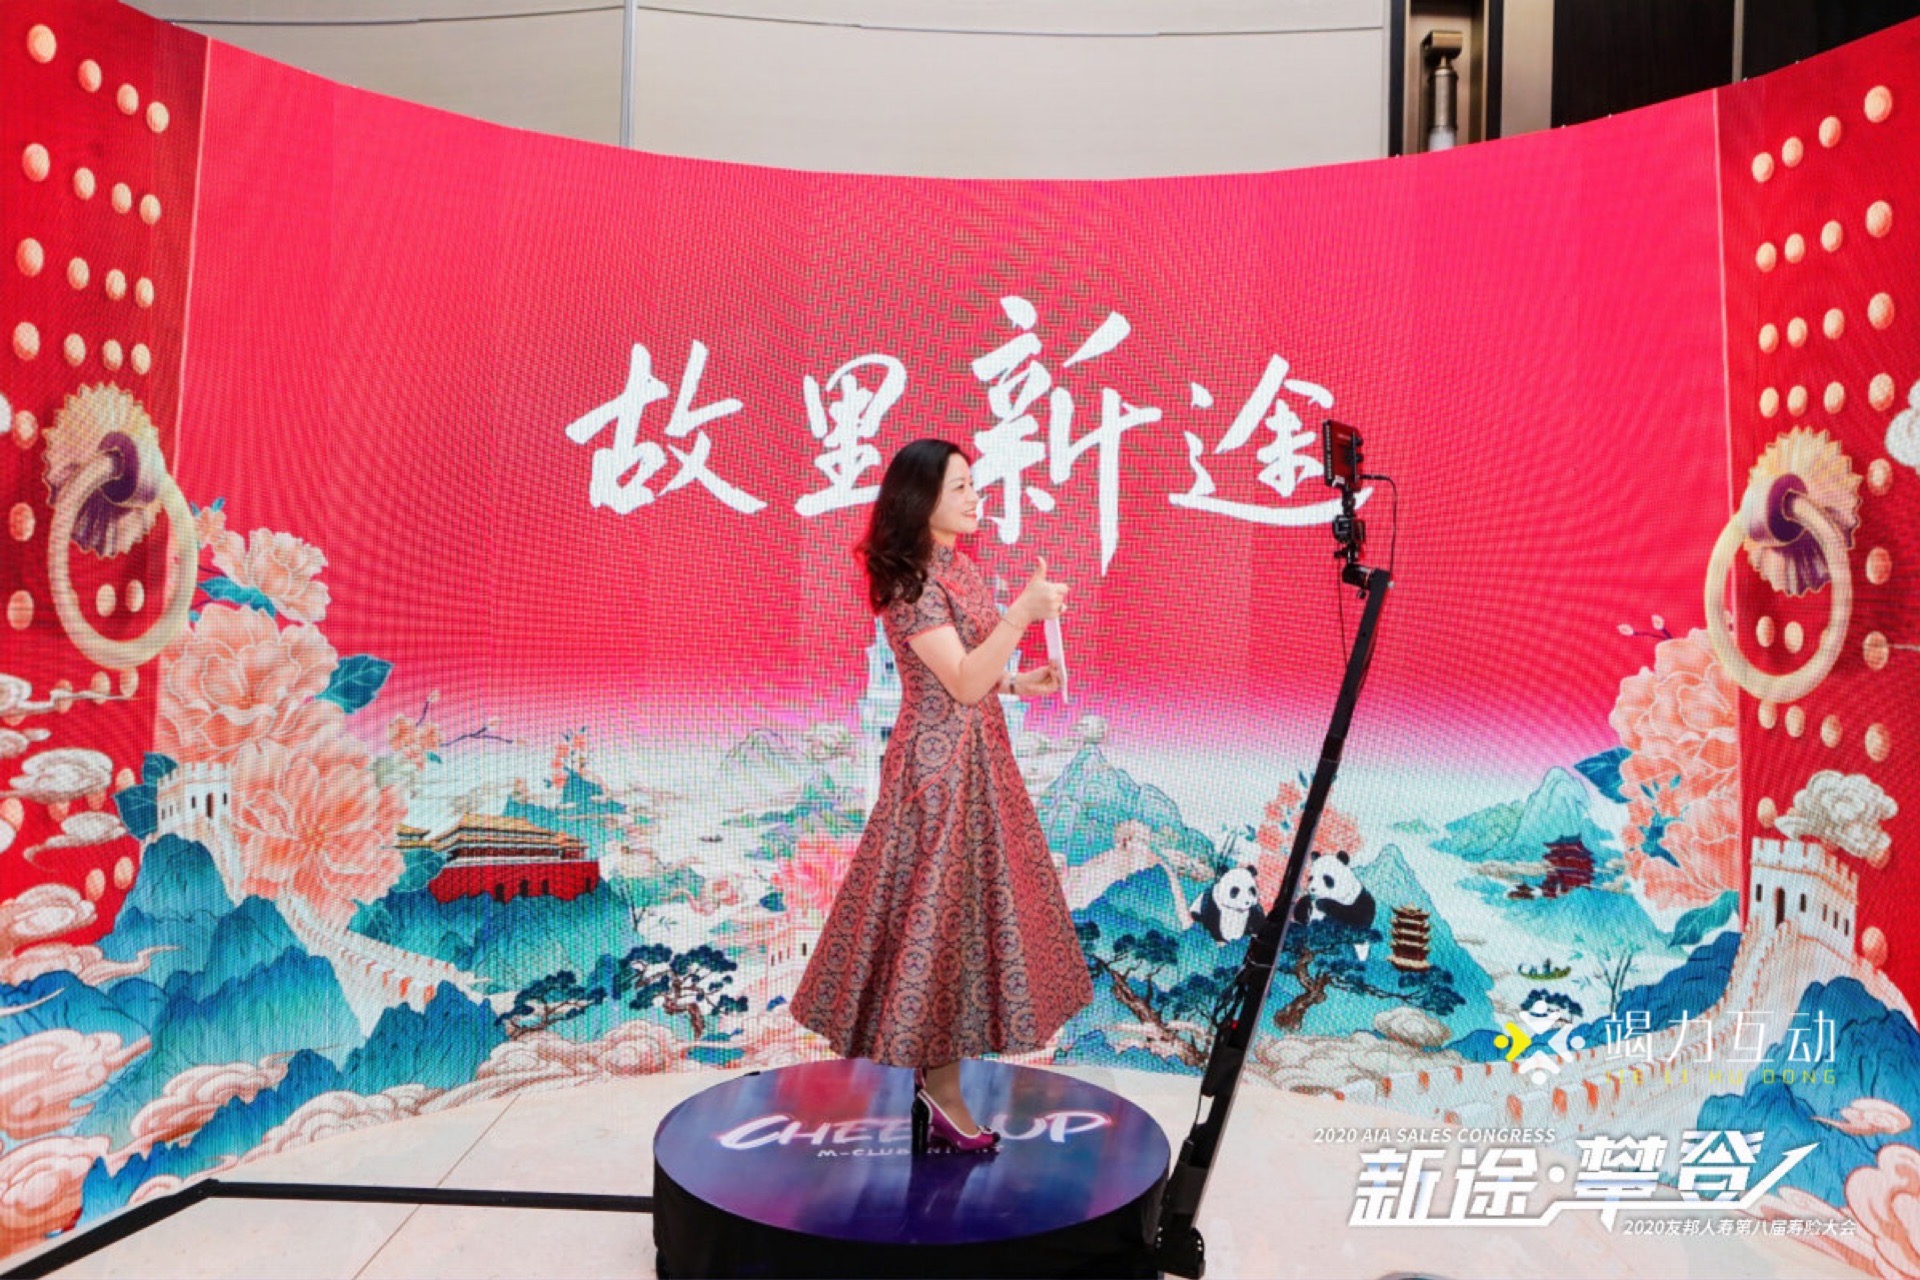 杭州站友邦人寿第八届寿险大会360升格拍照科技互动装置助力